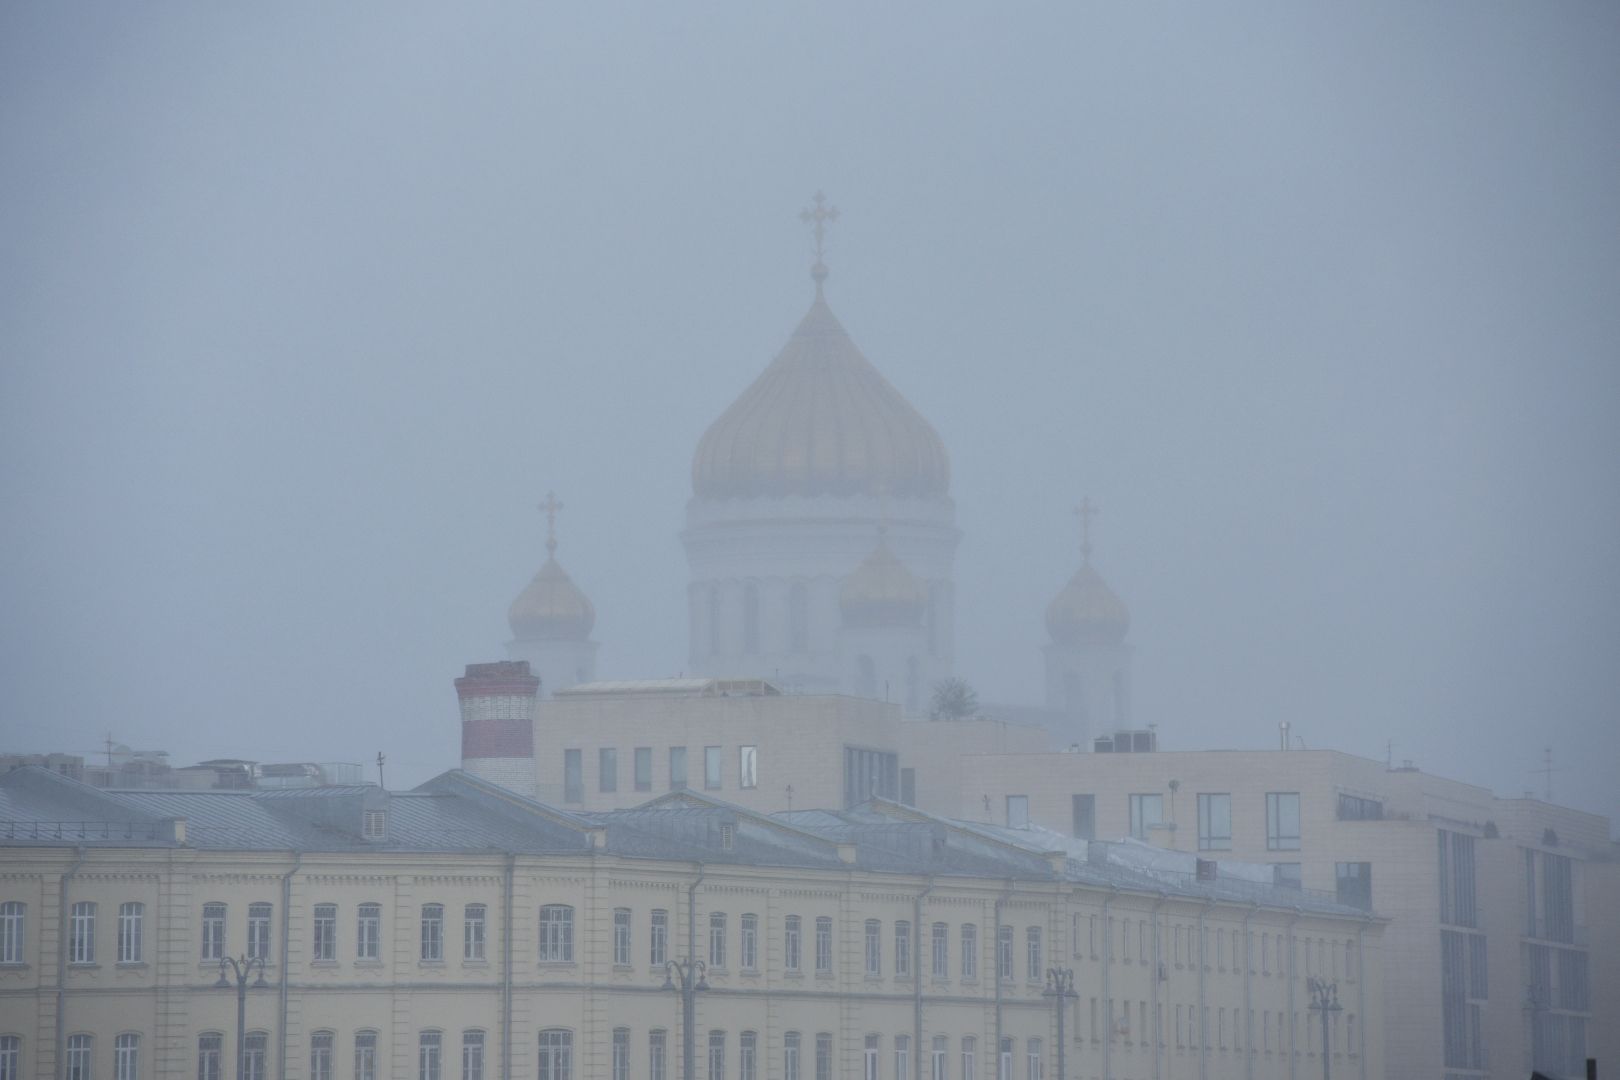 В городе фиксируется низкая облачность. Фото: Александр Кожохин